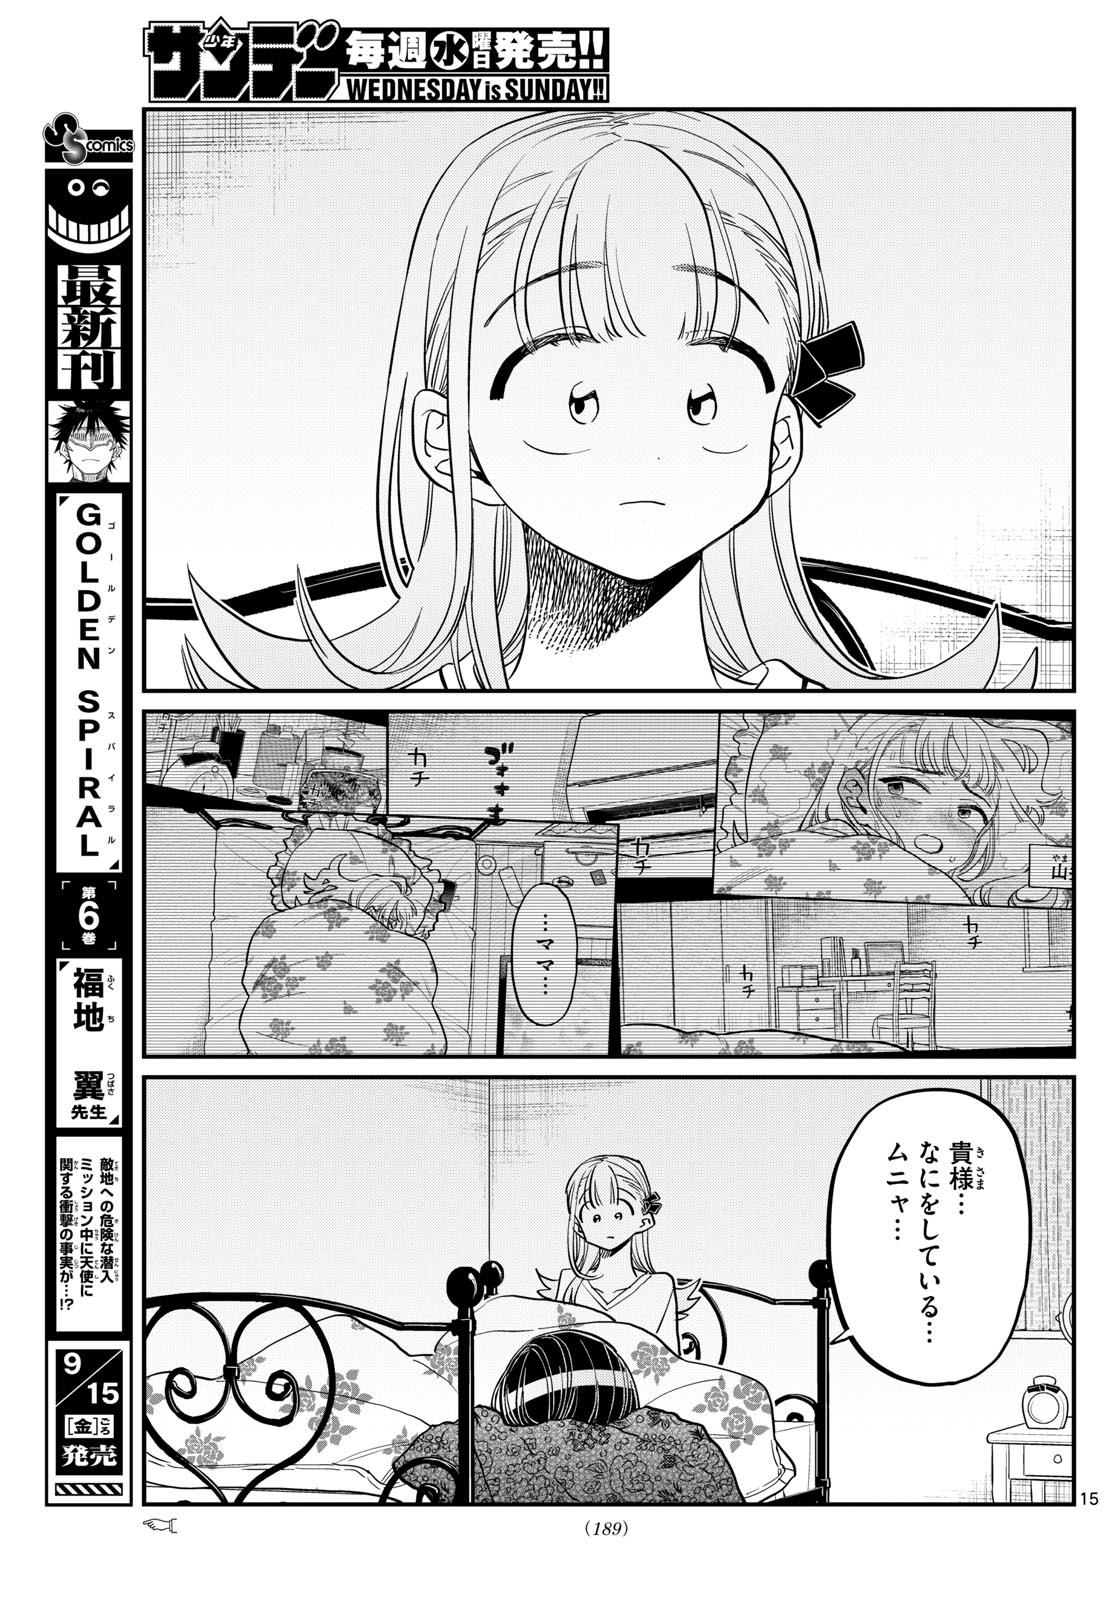 Read Komi San Wa Komyushou Desu Manga Chapter 419 English - Manga